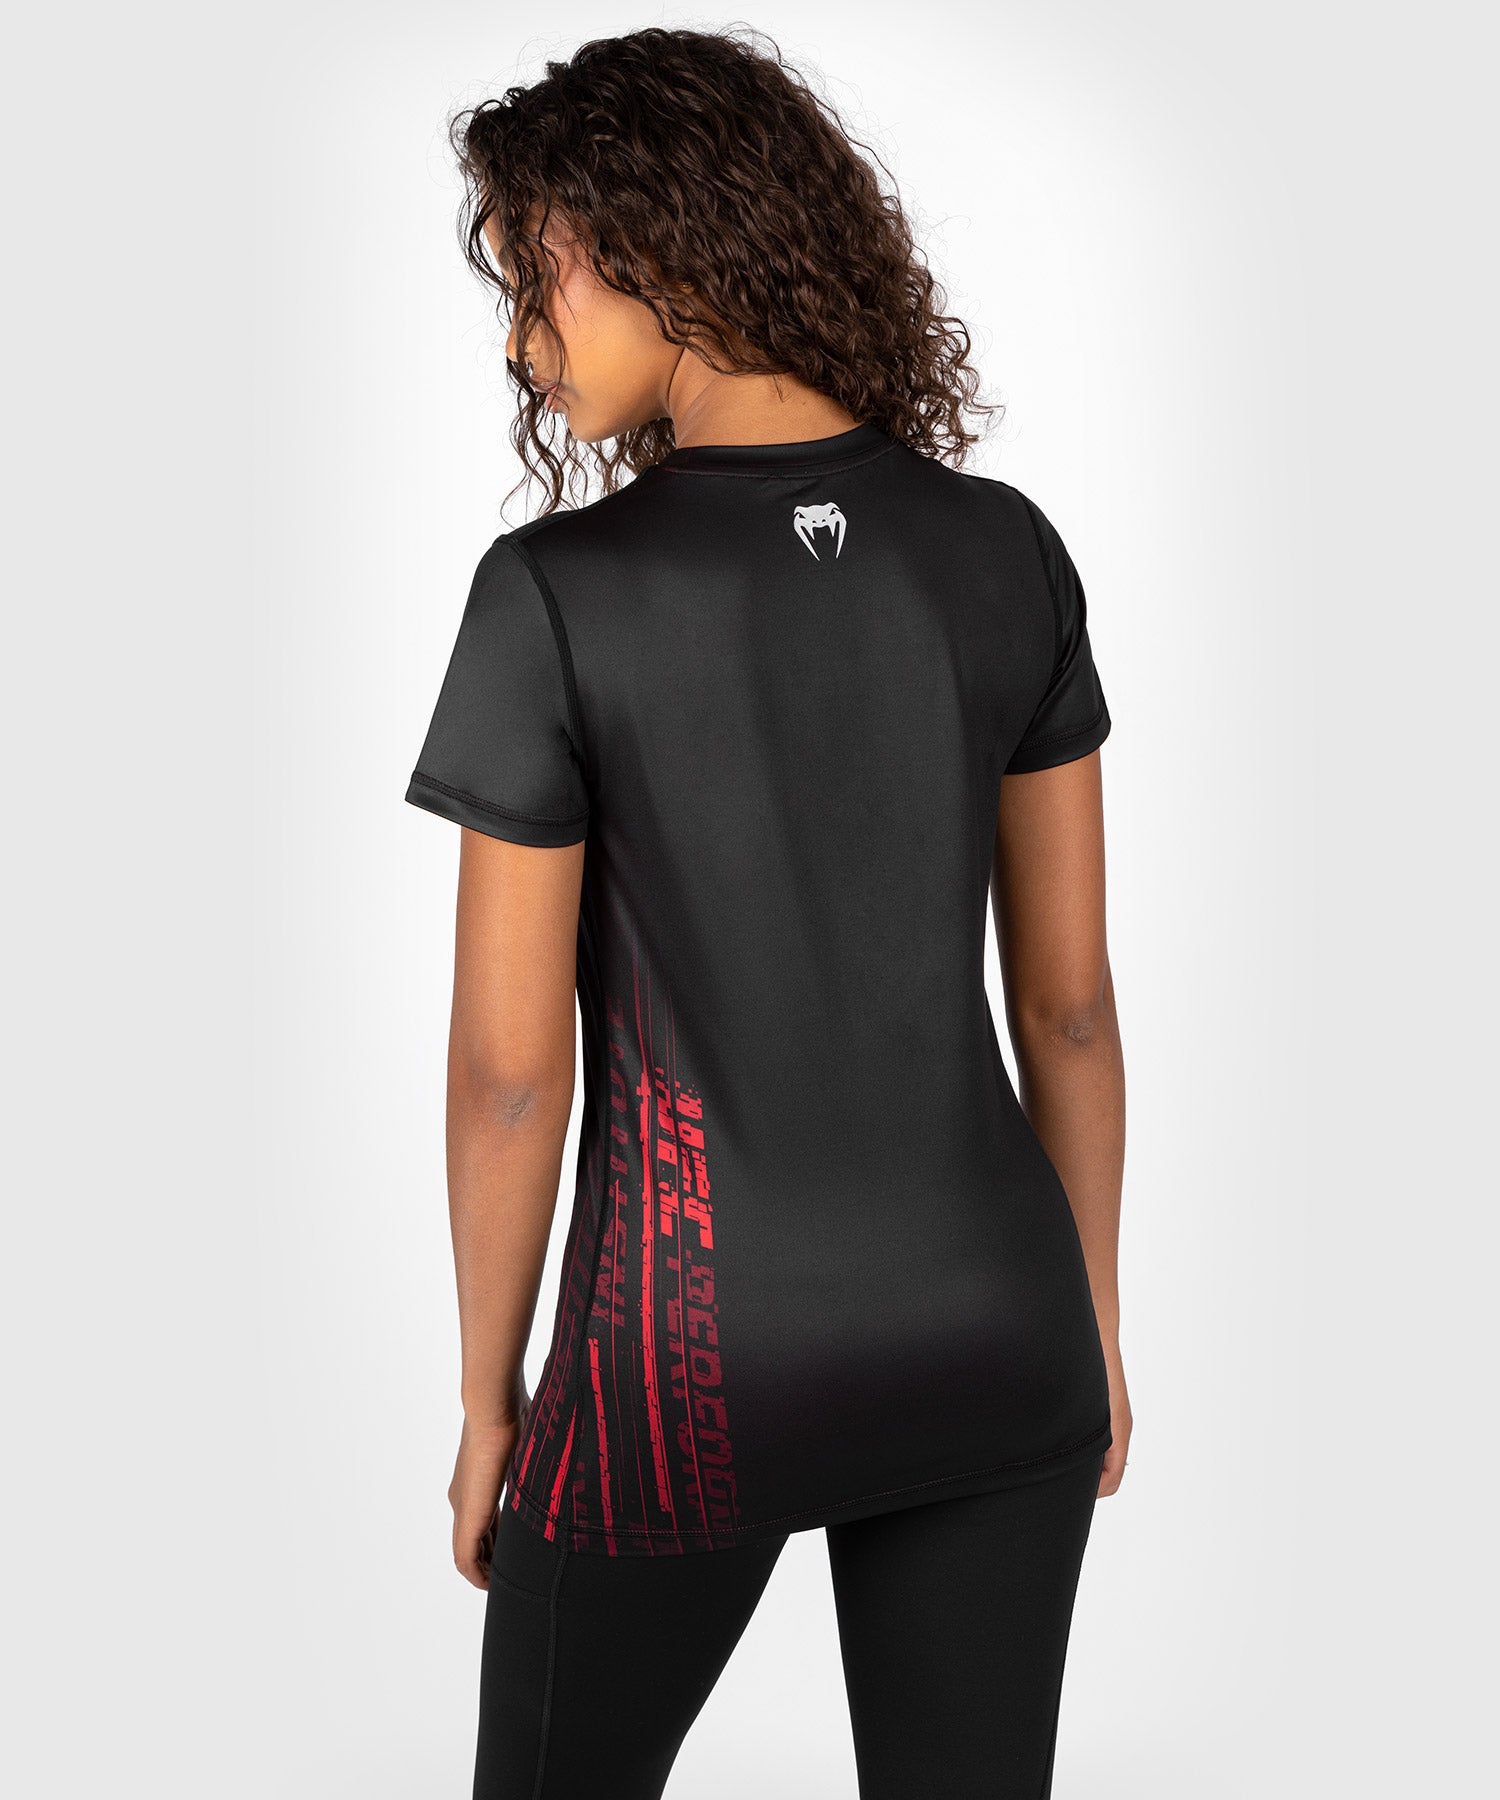 T-shirt Dry-Tech pour Femmes UFC Venum Performance Institute 2.0 - Noir/Rouge - T-shirts